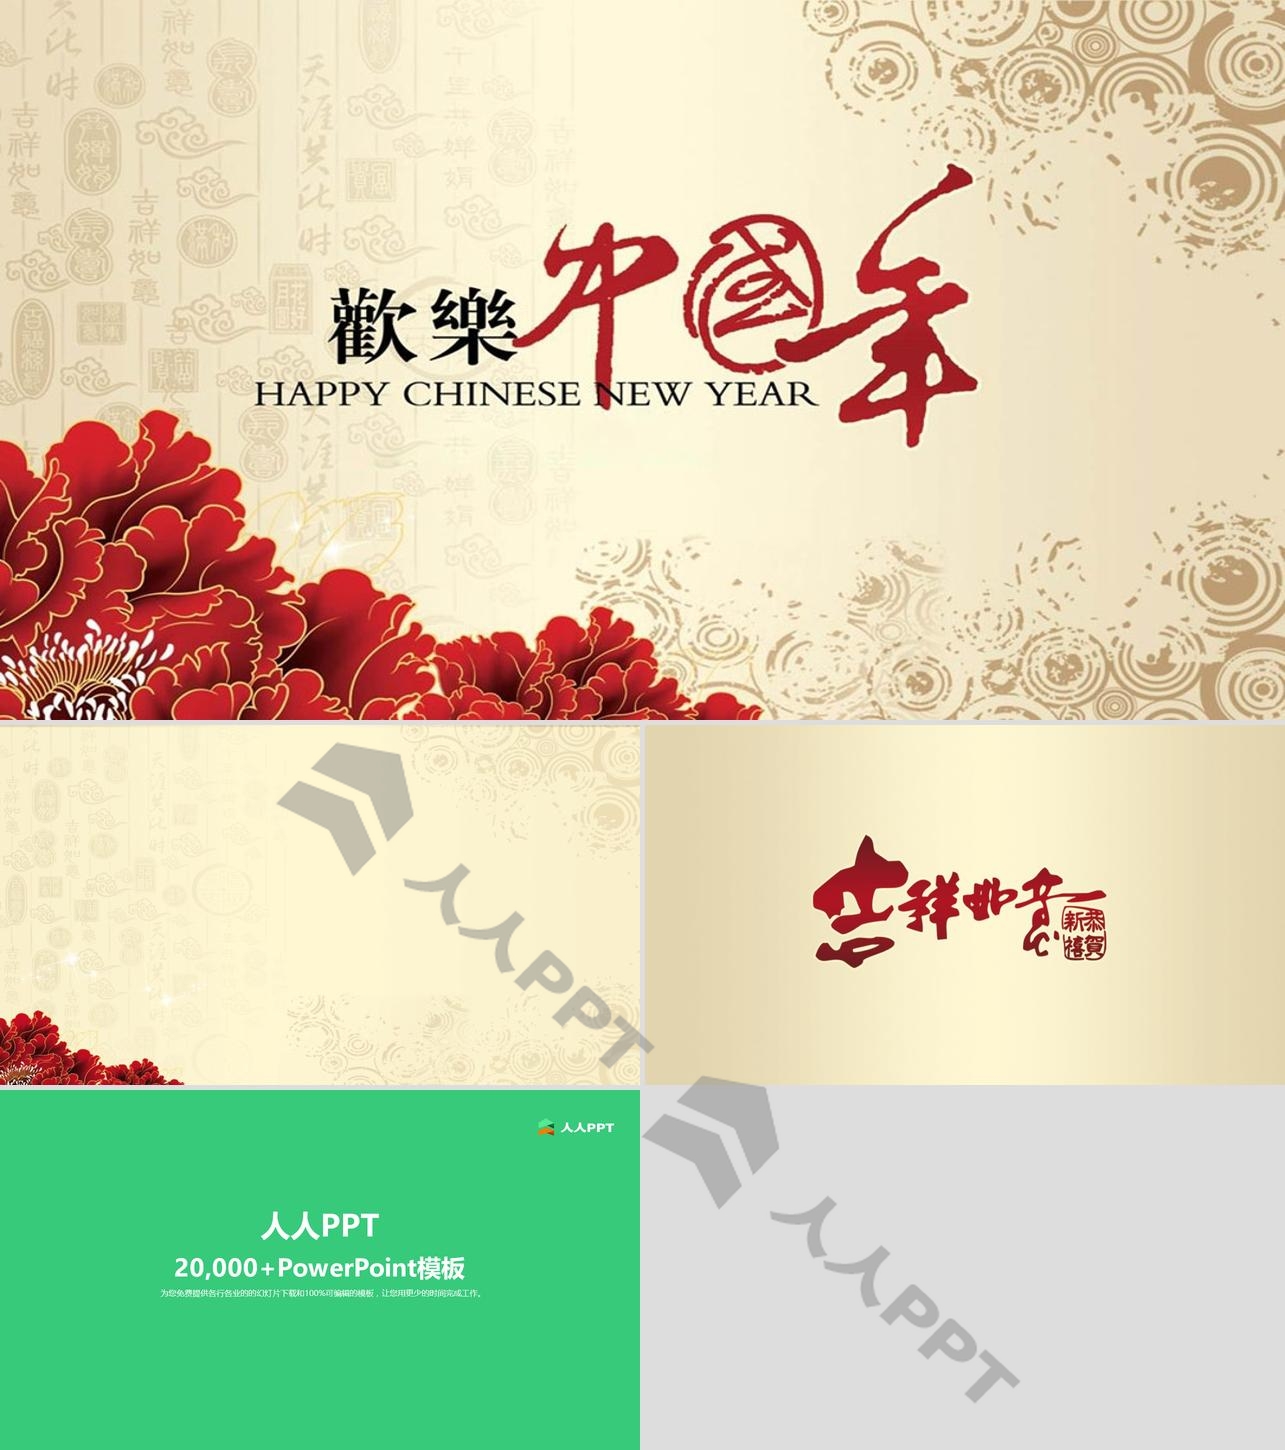 淡雅古朴风格的欢乐中国年PPT模板下载长图